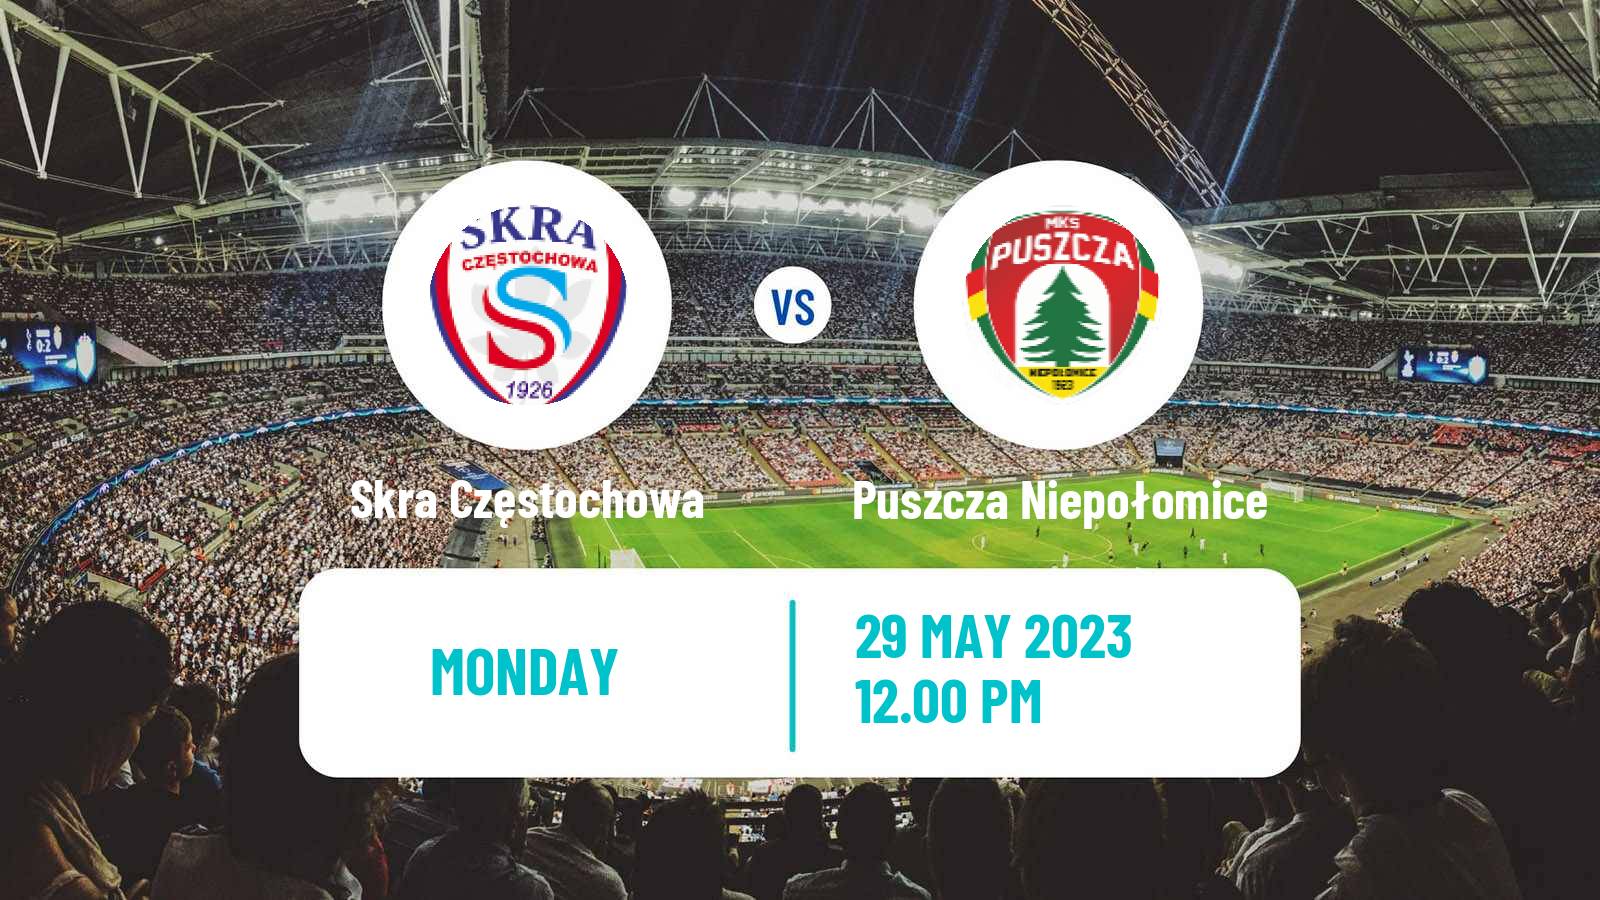 Soccer Polish Division 1 Skra Częstochowa - Puszcza Niepołomice